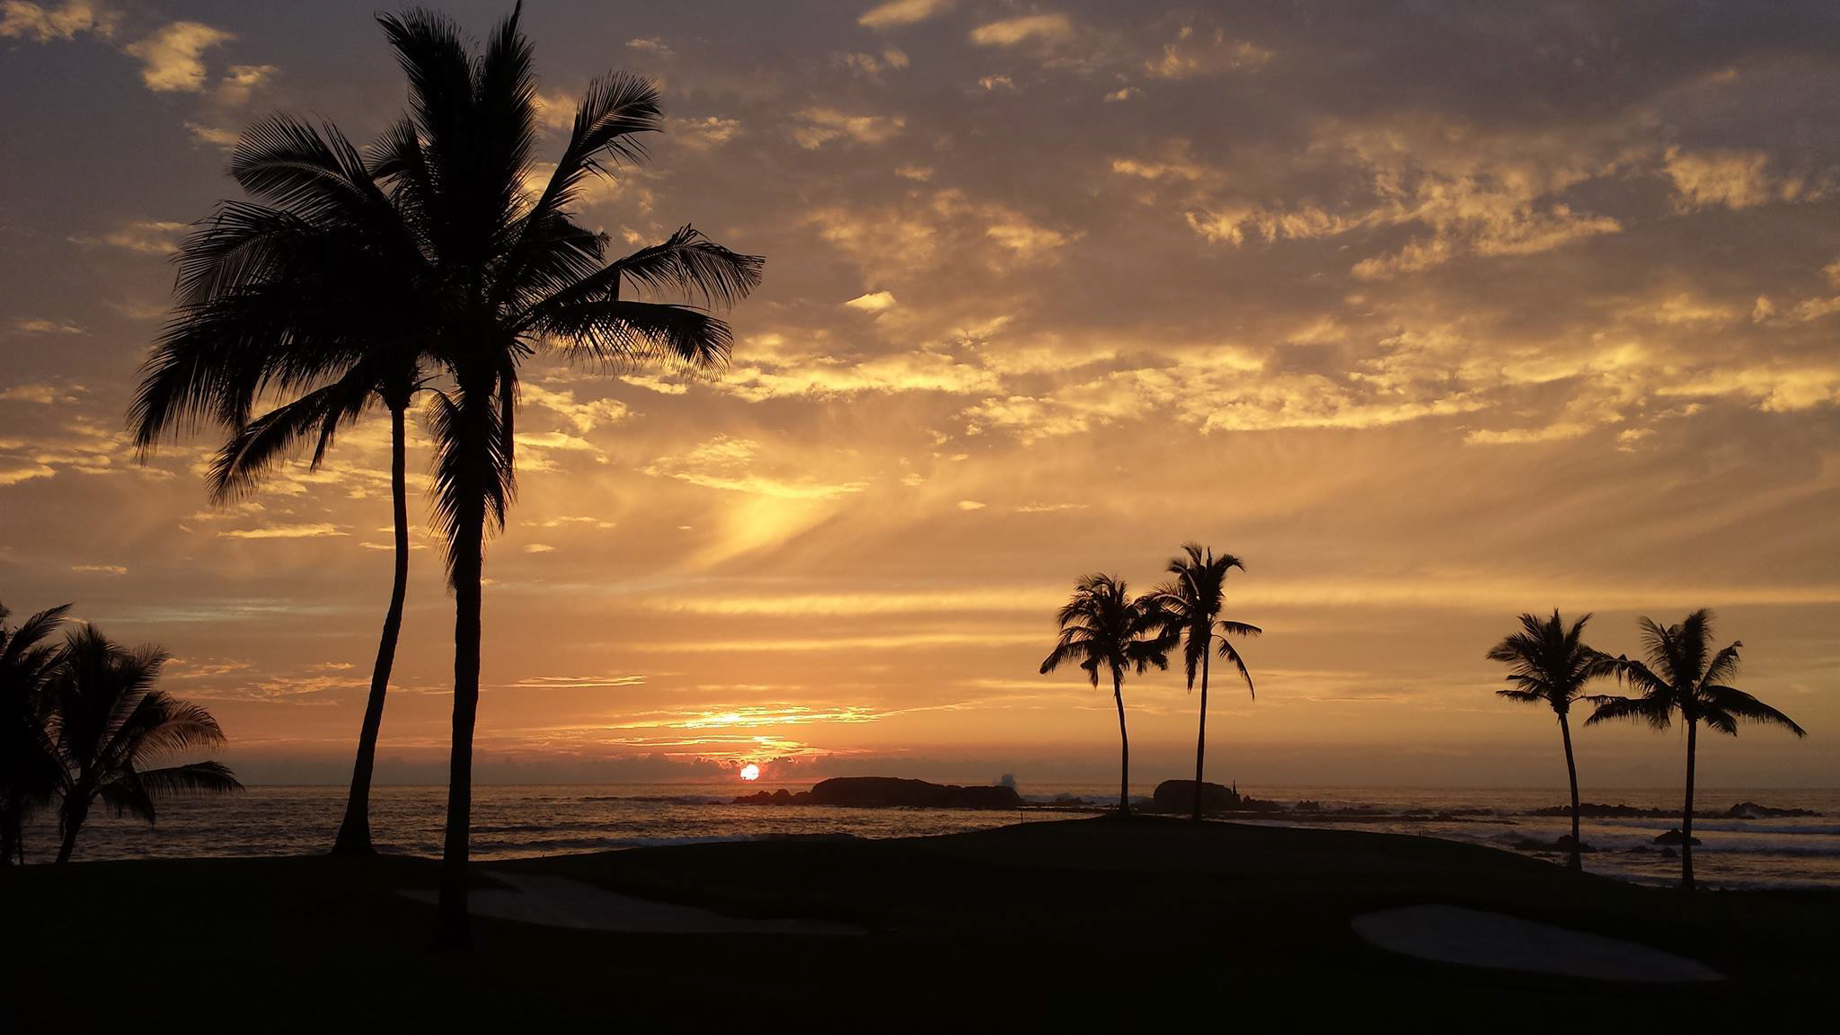 Four Seasons Resort Punta Mita – Nayarit, Mexico – Beach Sunset